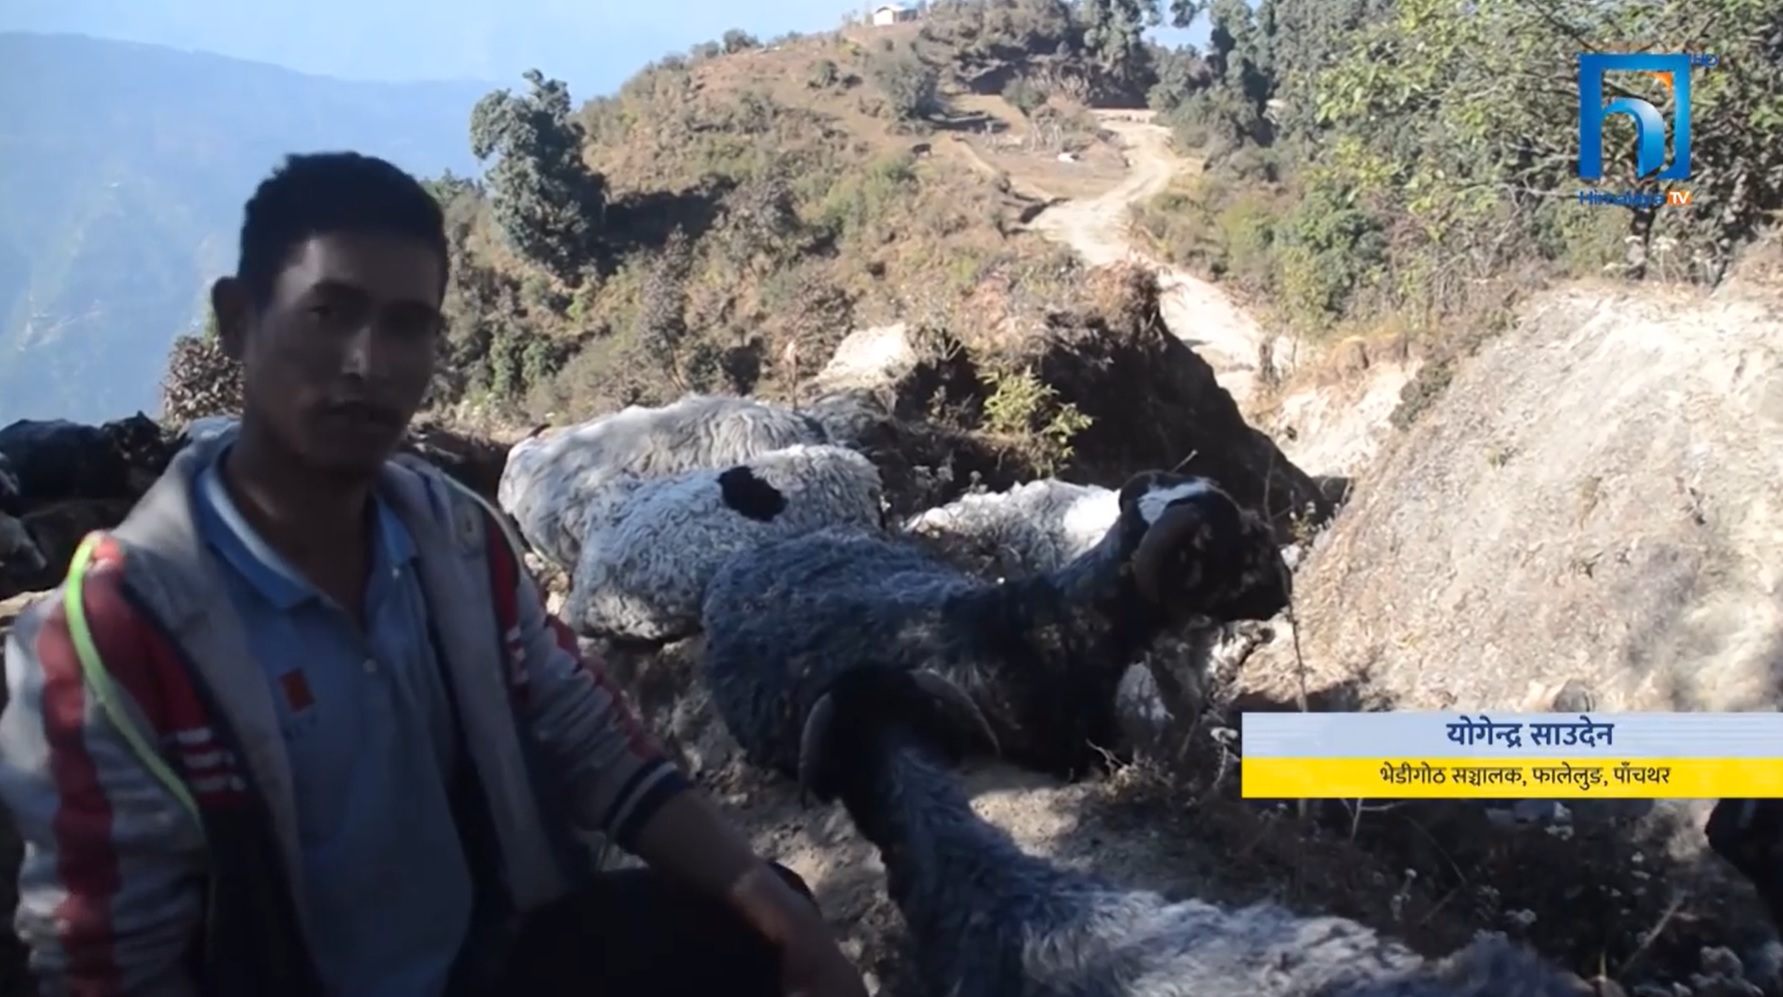 हिमाली क्षेत्रमा चिसो बढ्दै गएपछि गोठालाहरु भेडा धपाउँदै उँधो झर्दै (भिडियोसहित)